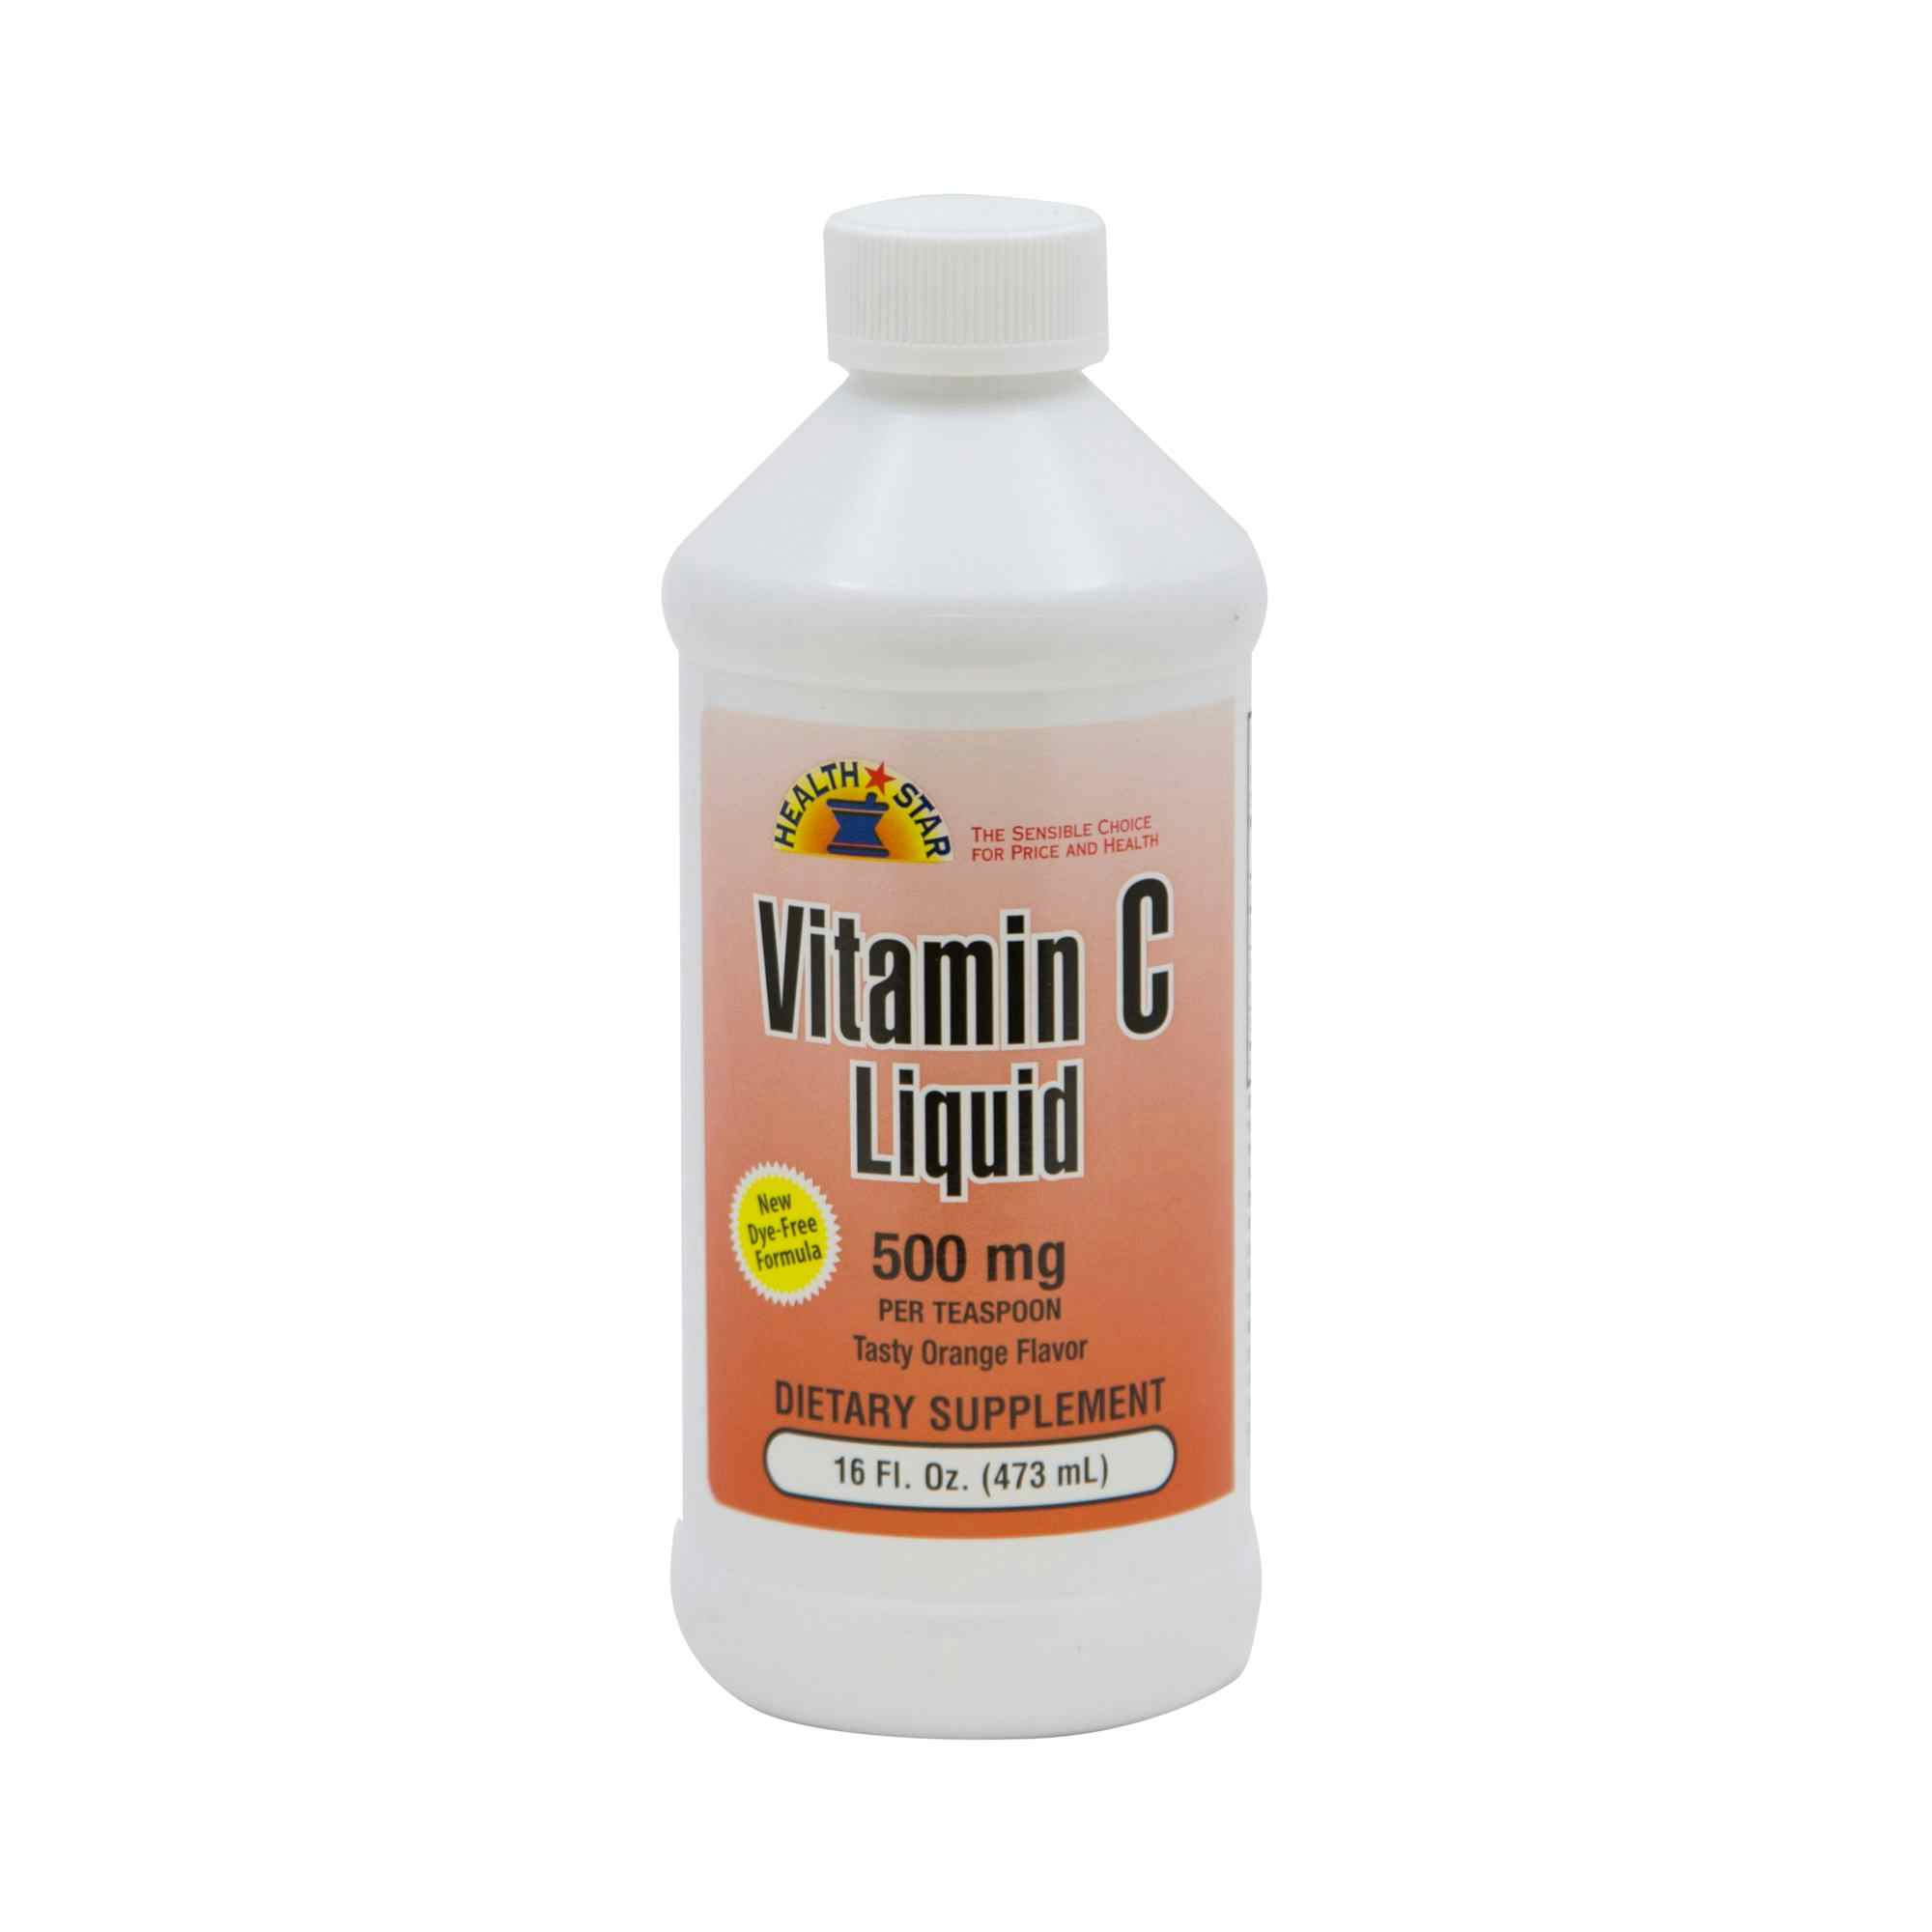 Geri-Care Ascorbic Acid Vitamin C Supplement 500 mg, Liquid, Q842-16-GCP, 500 mg - Case of 12 Bottles